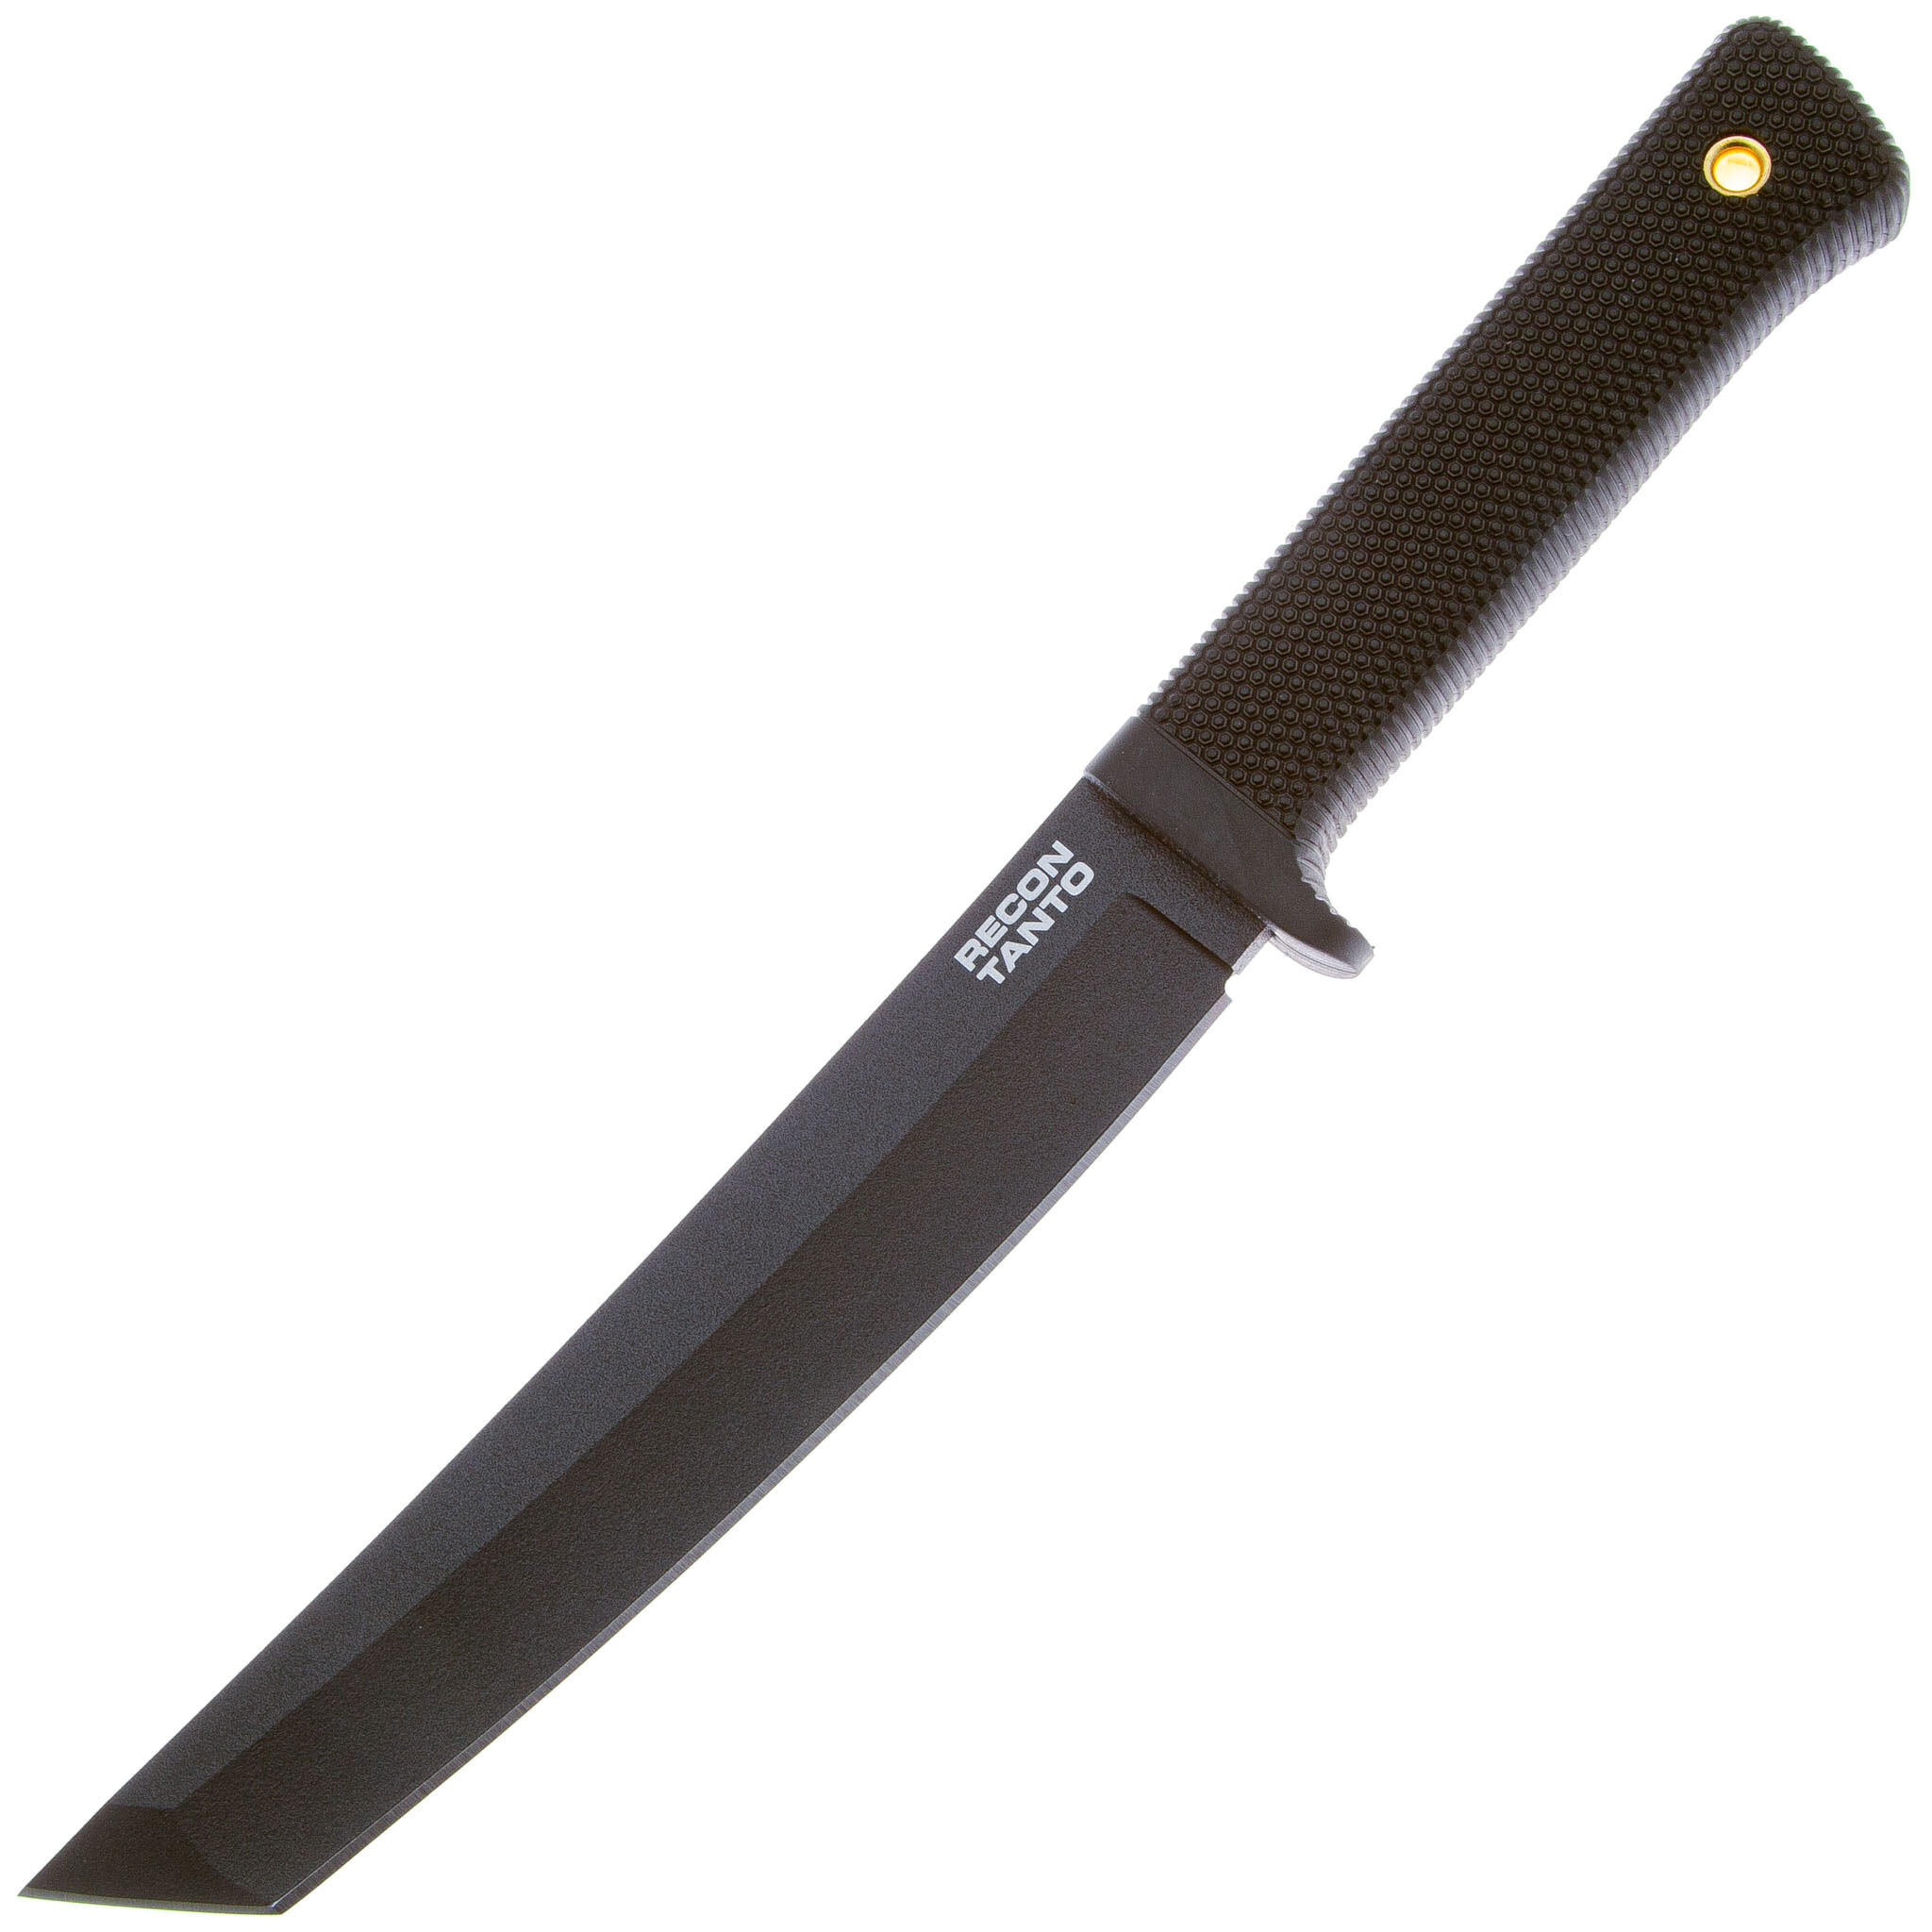 Нож с фиксированным клинком Cold Steel Recon Tanto, сталь SK-5, рукоять резина, black складной нож cold steel mini recon 1 spear point сталь aus10a рукоять grn